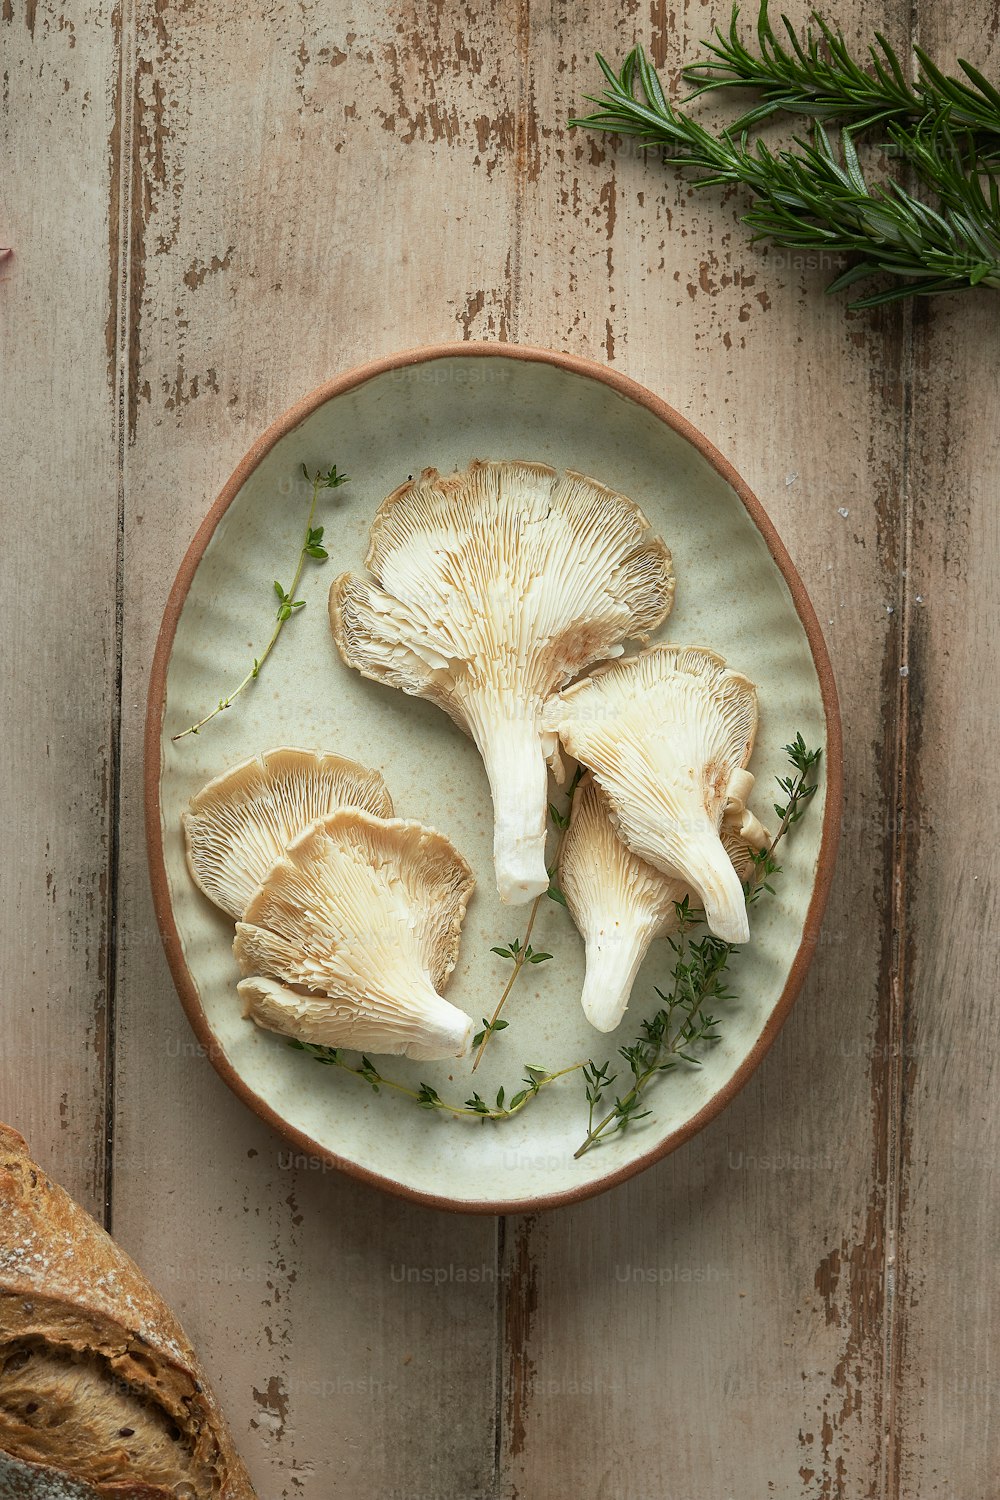 빵 한 덩어리 옆에 버섯을 얹은 흰색 접시